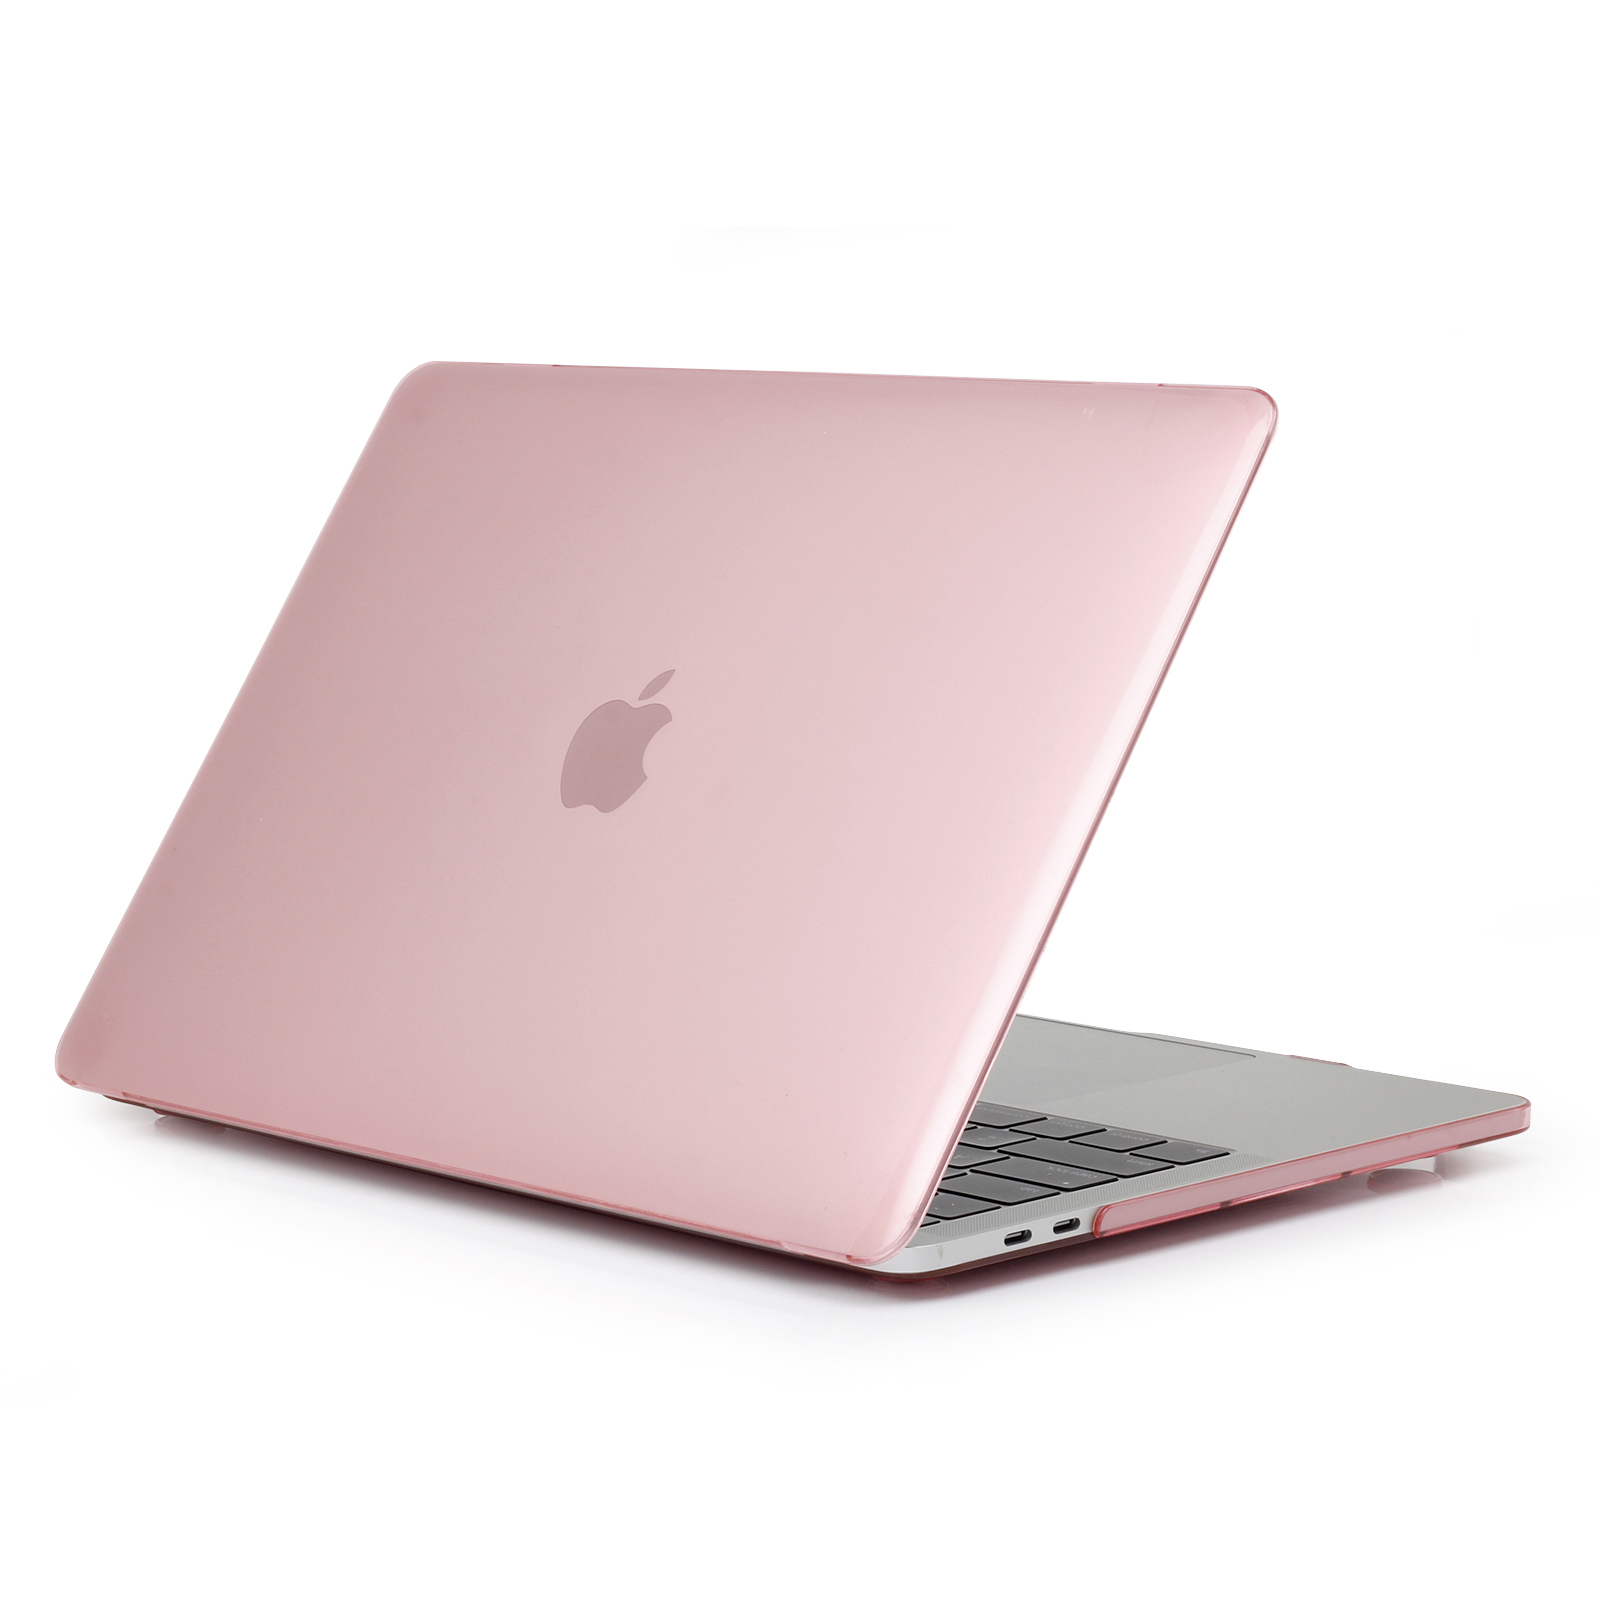 iPouzdro.cz pro MacBook Pro 15 (2012-2015) 2222221002047 růžová